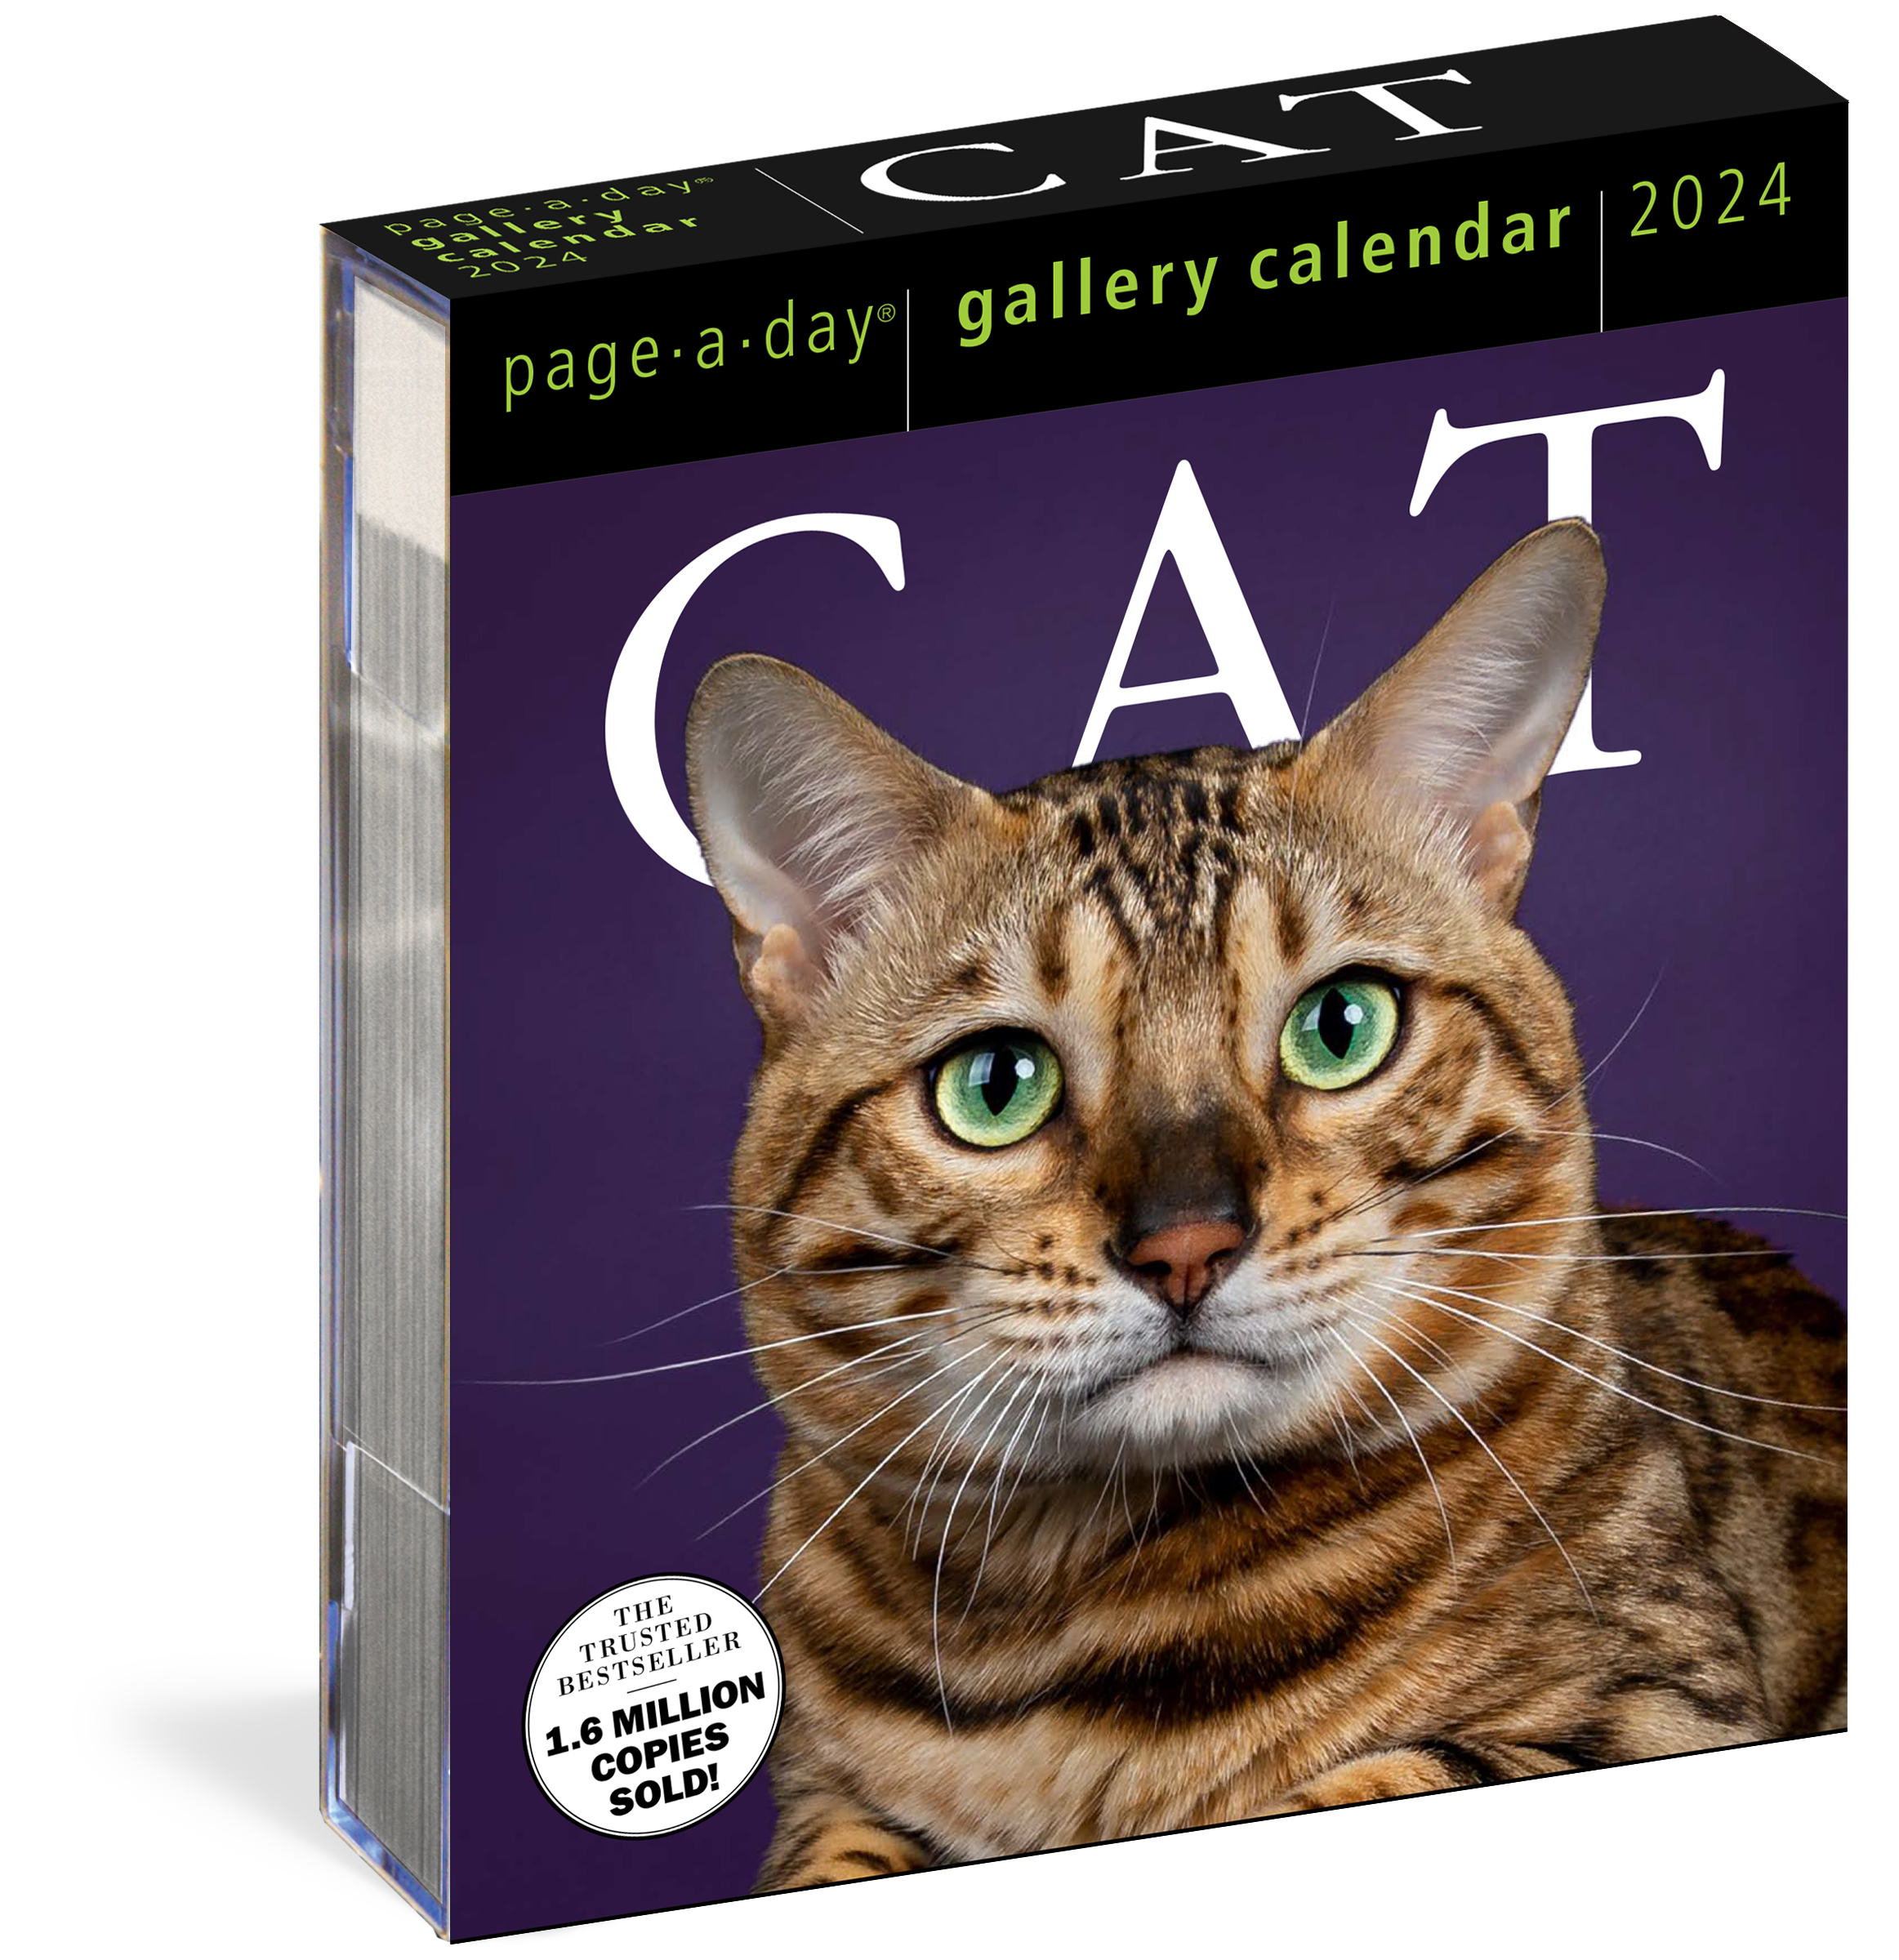 Cat PageADay Gallery Calendar 2024 by Workman Calendars Hachette